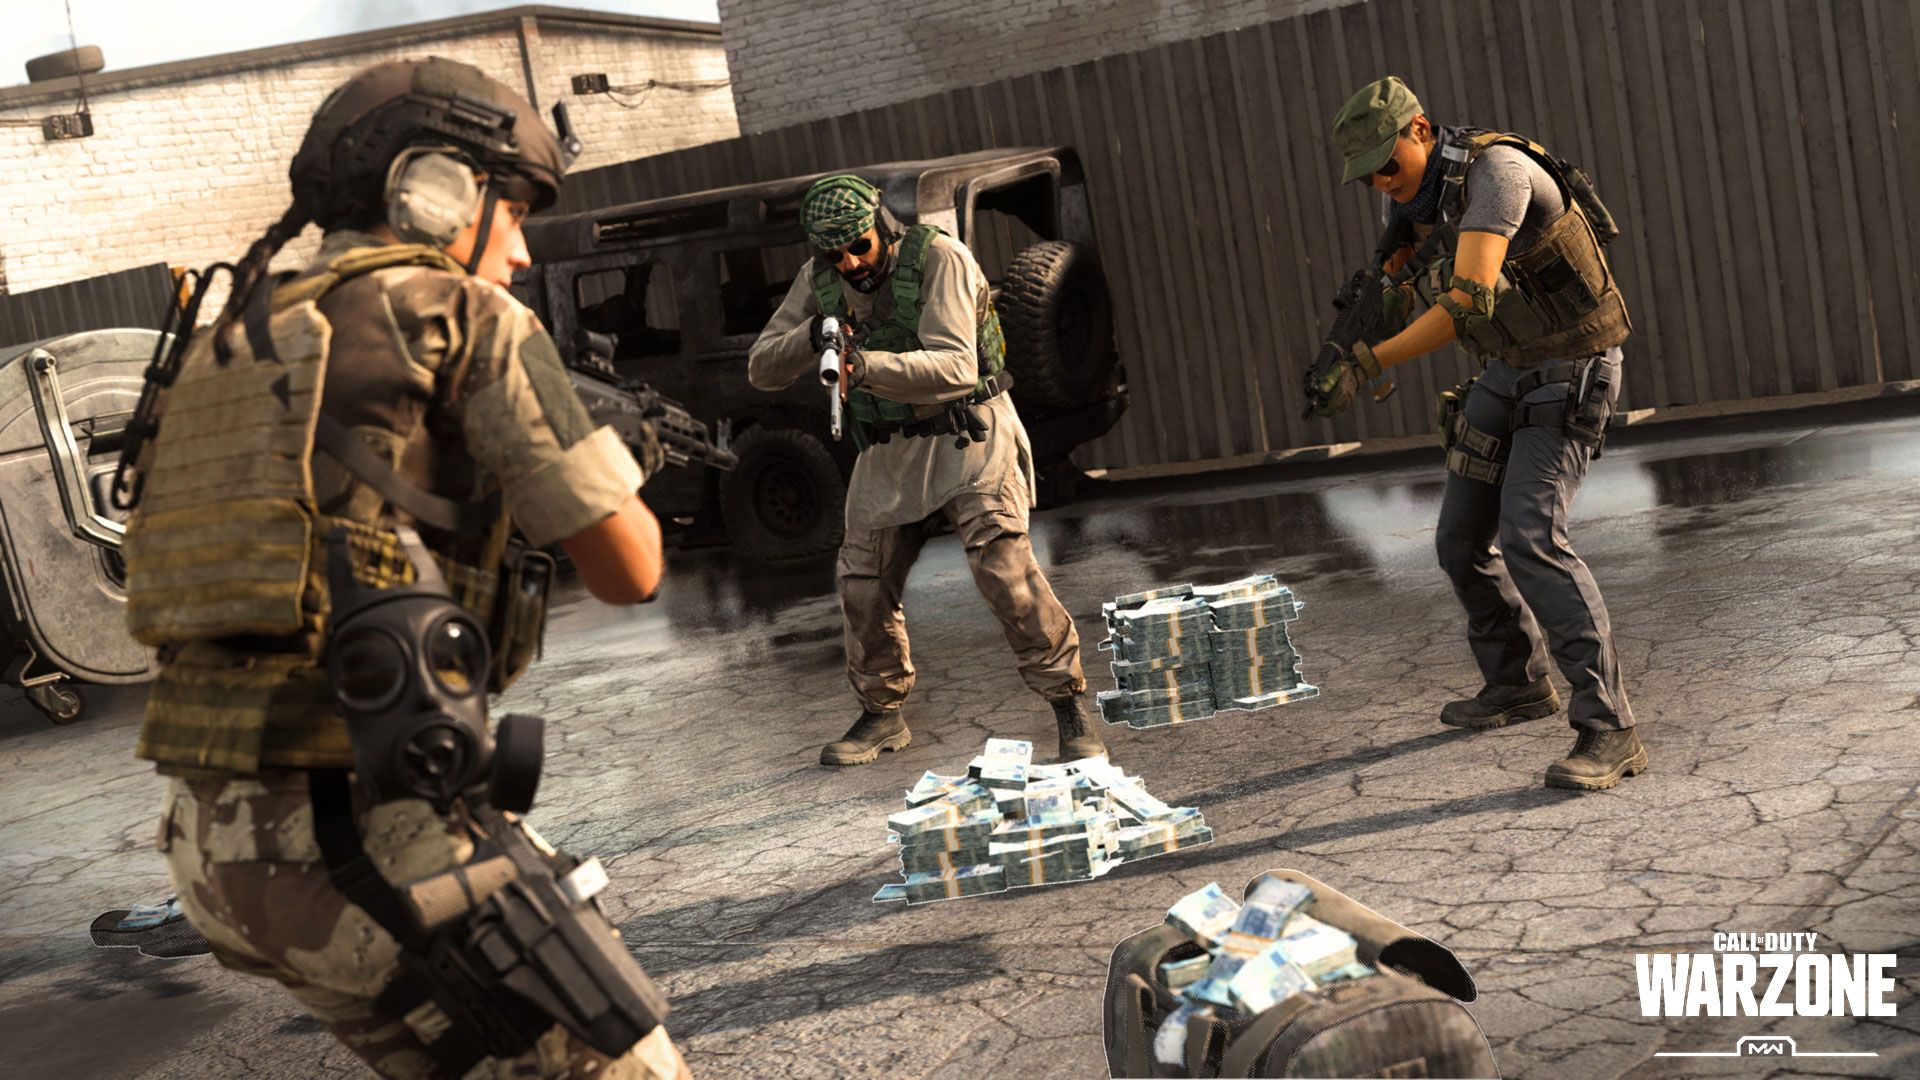 Call of Duty Modern Warfare cho người chơi trải nghiệm miễn phí chế độ Multiplayer ngay từ hôm nay